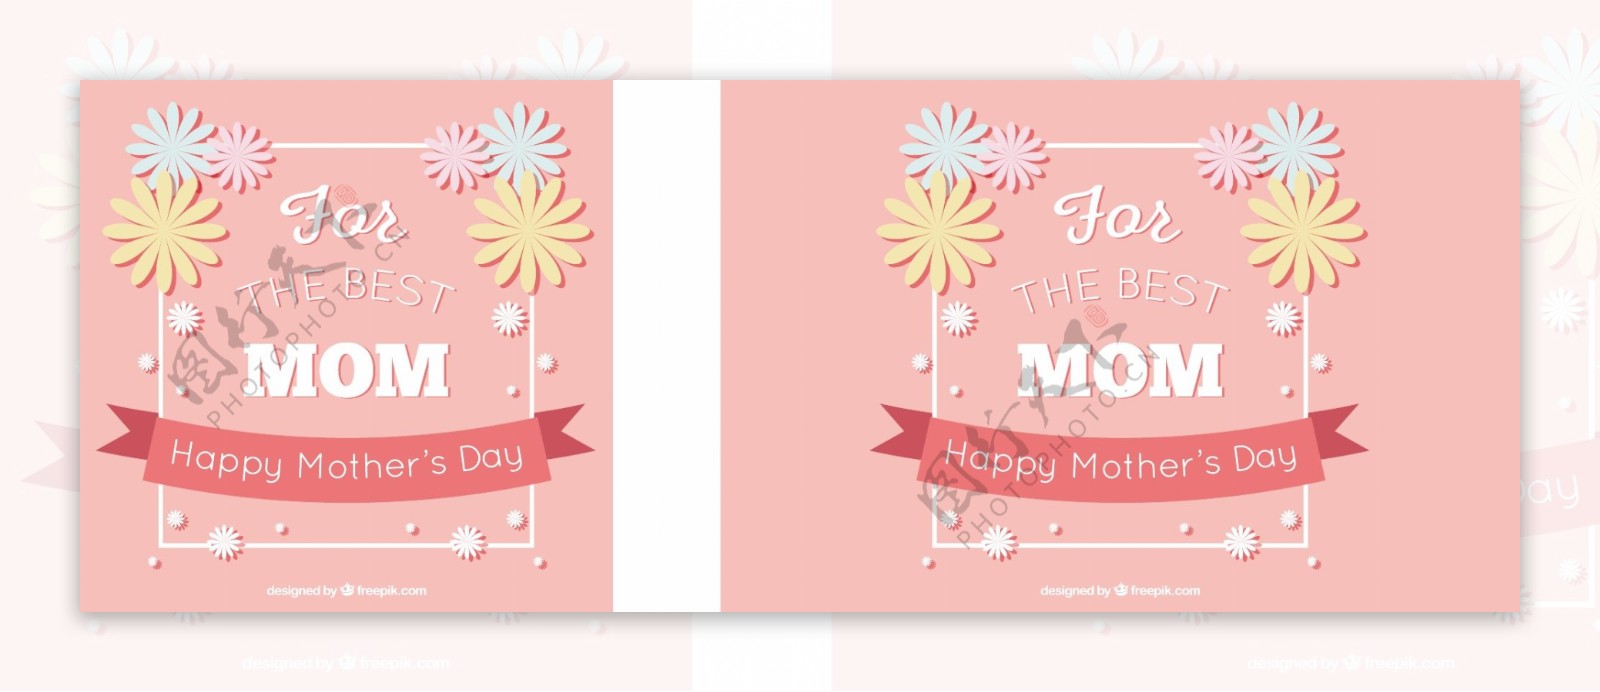 粉红色背景与母亲节装饰鲜花